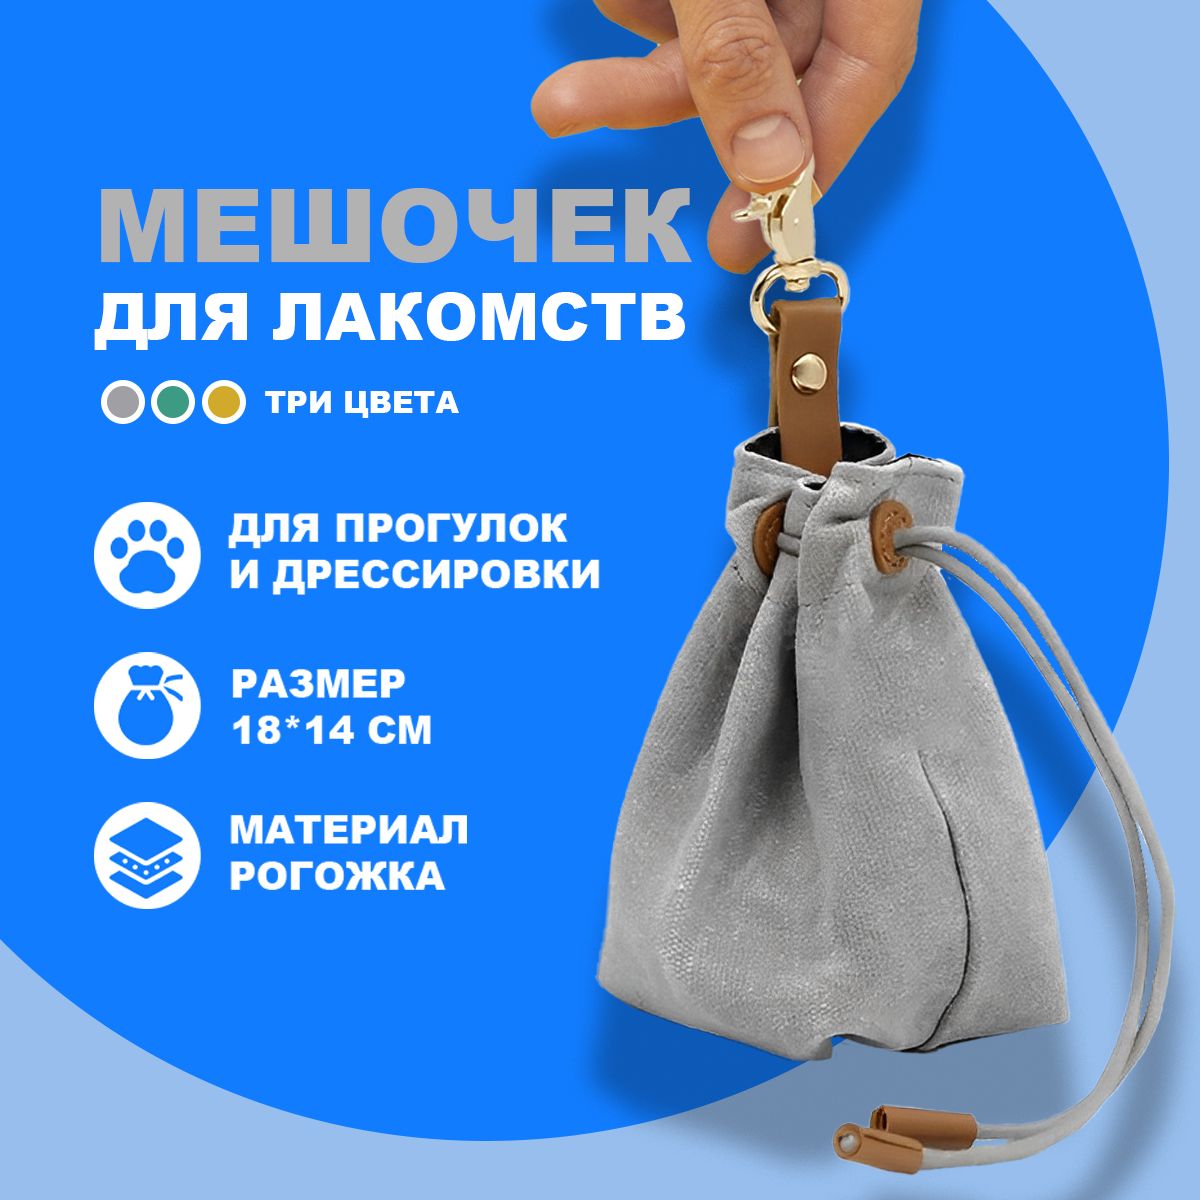 Купить мешочек для лакомства Snack в Москве | Гарантия!